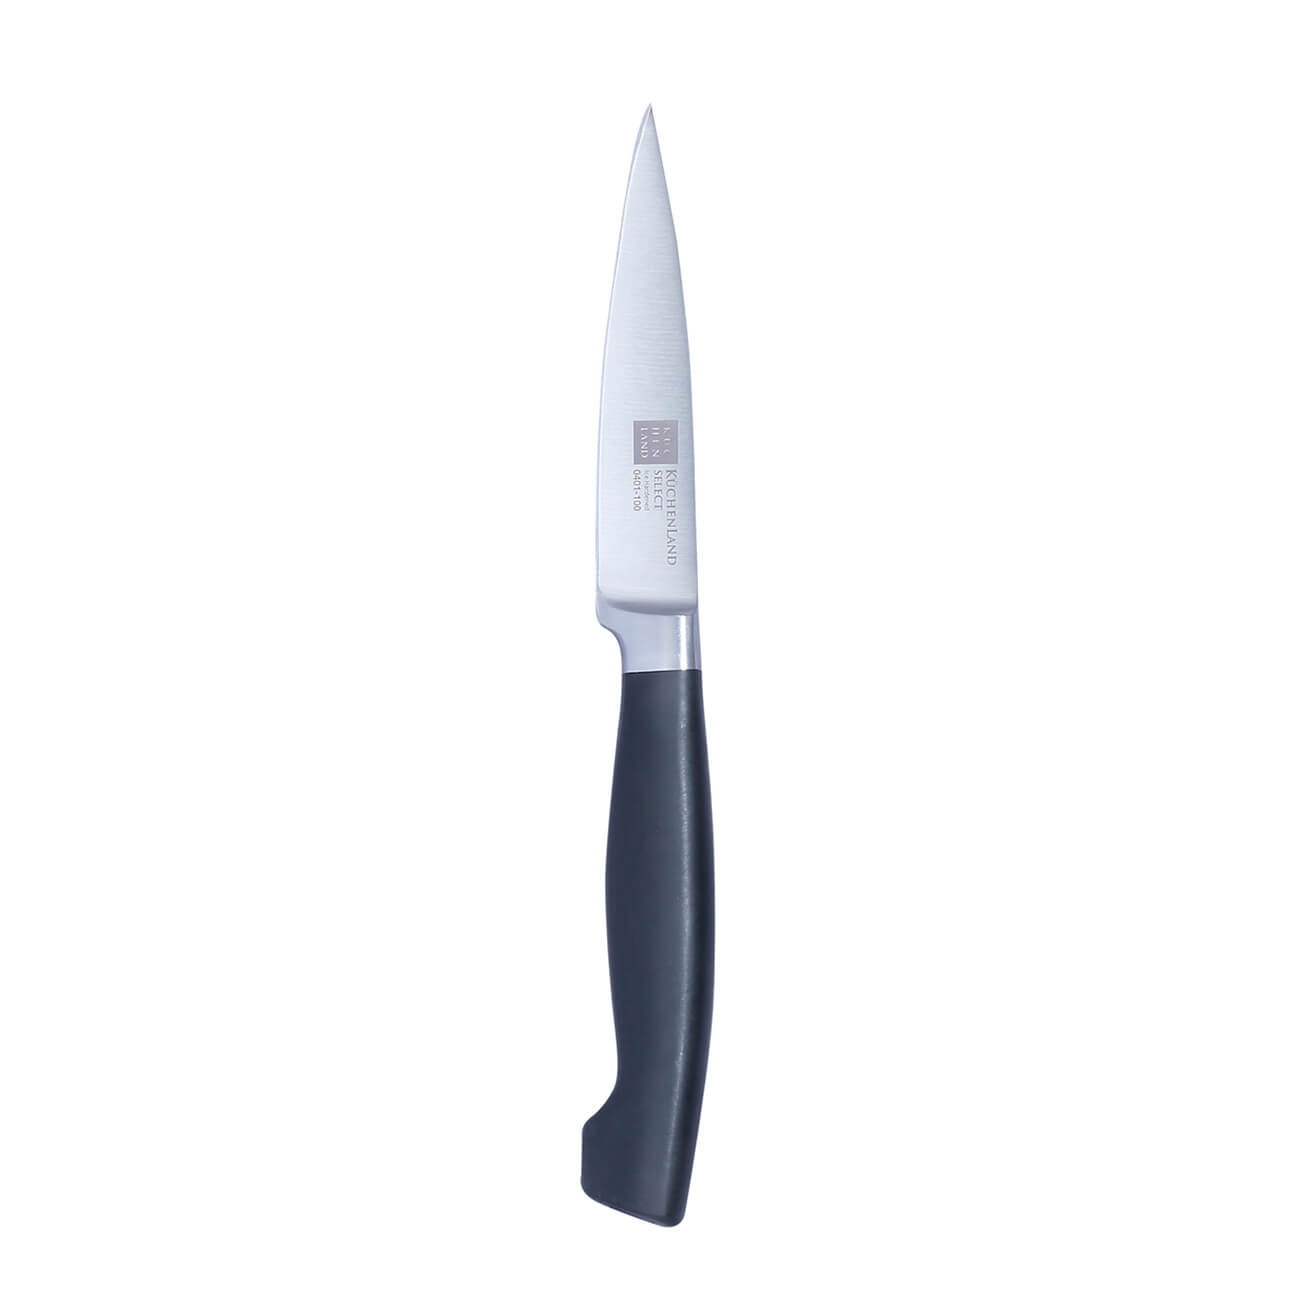 Нож для чистки овощей, 10 см, сталь/пластик, Select нож для чистки овощей jamie oliver 9 cм k2671144